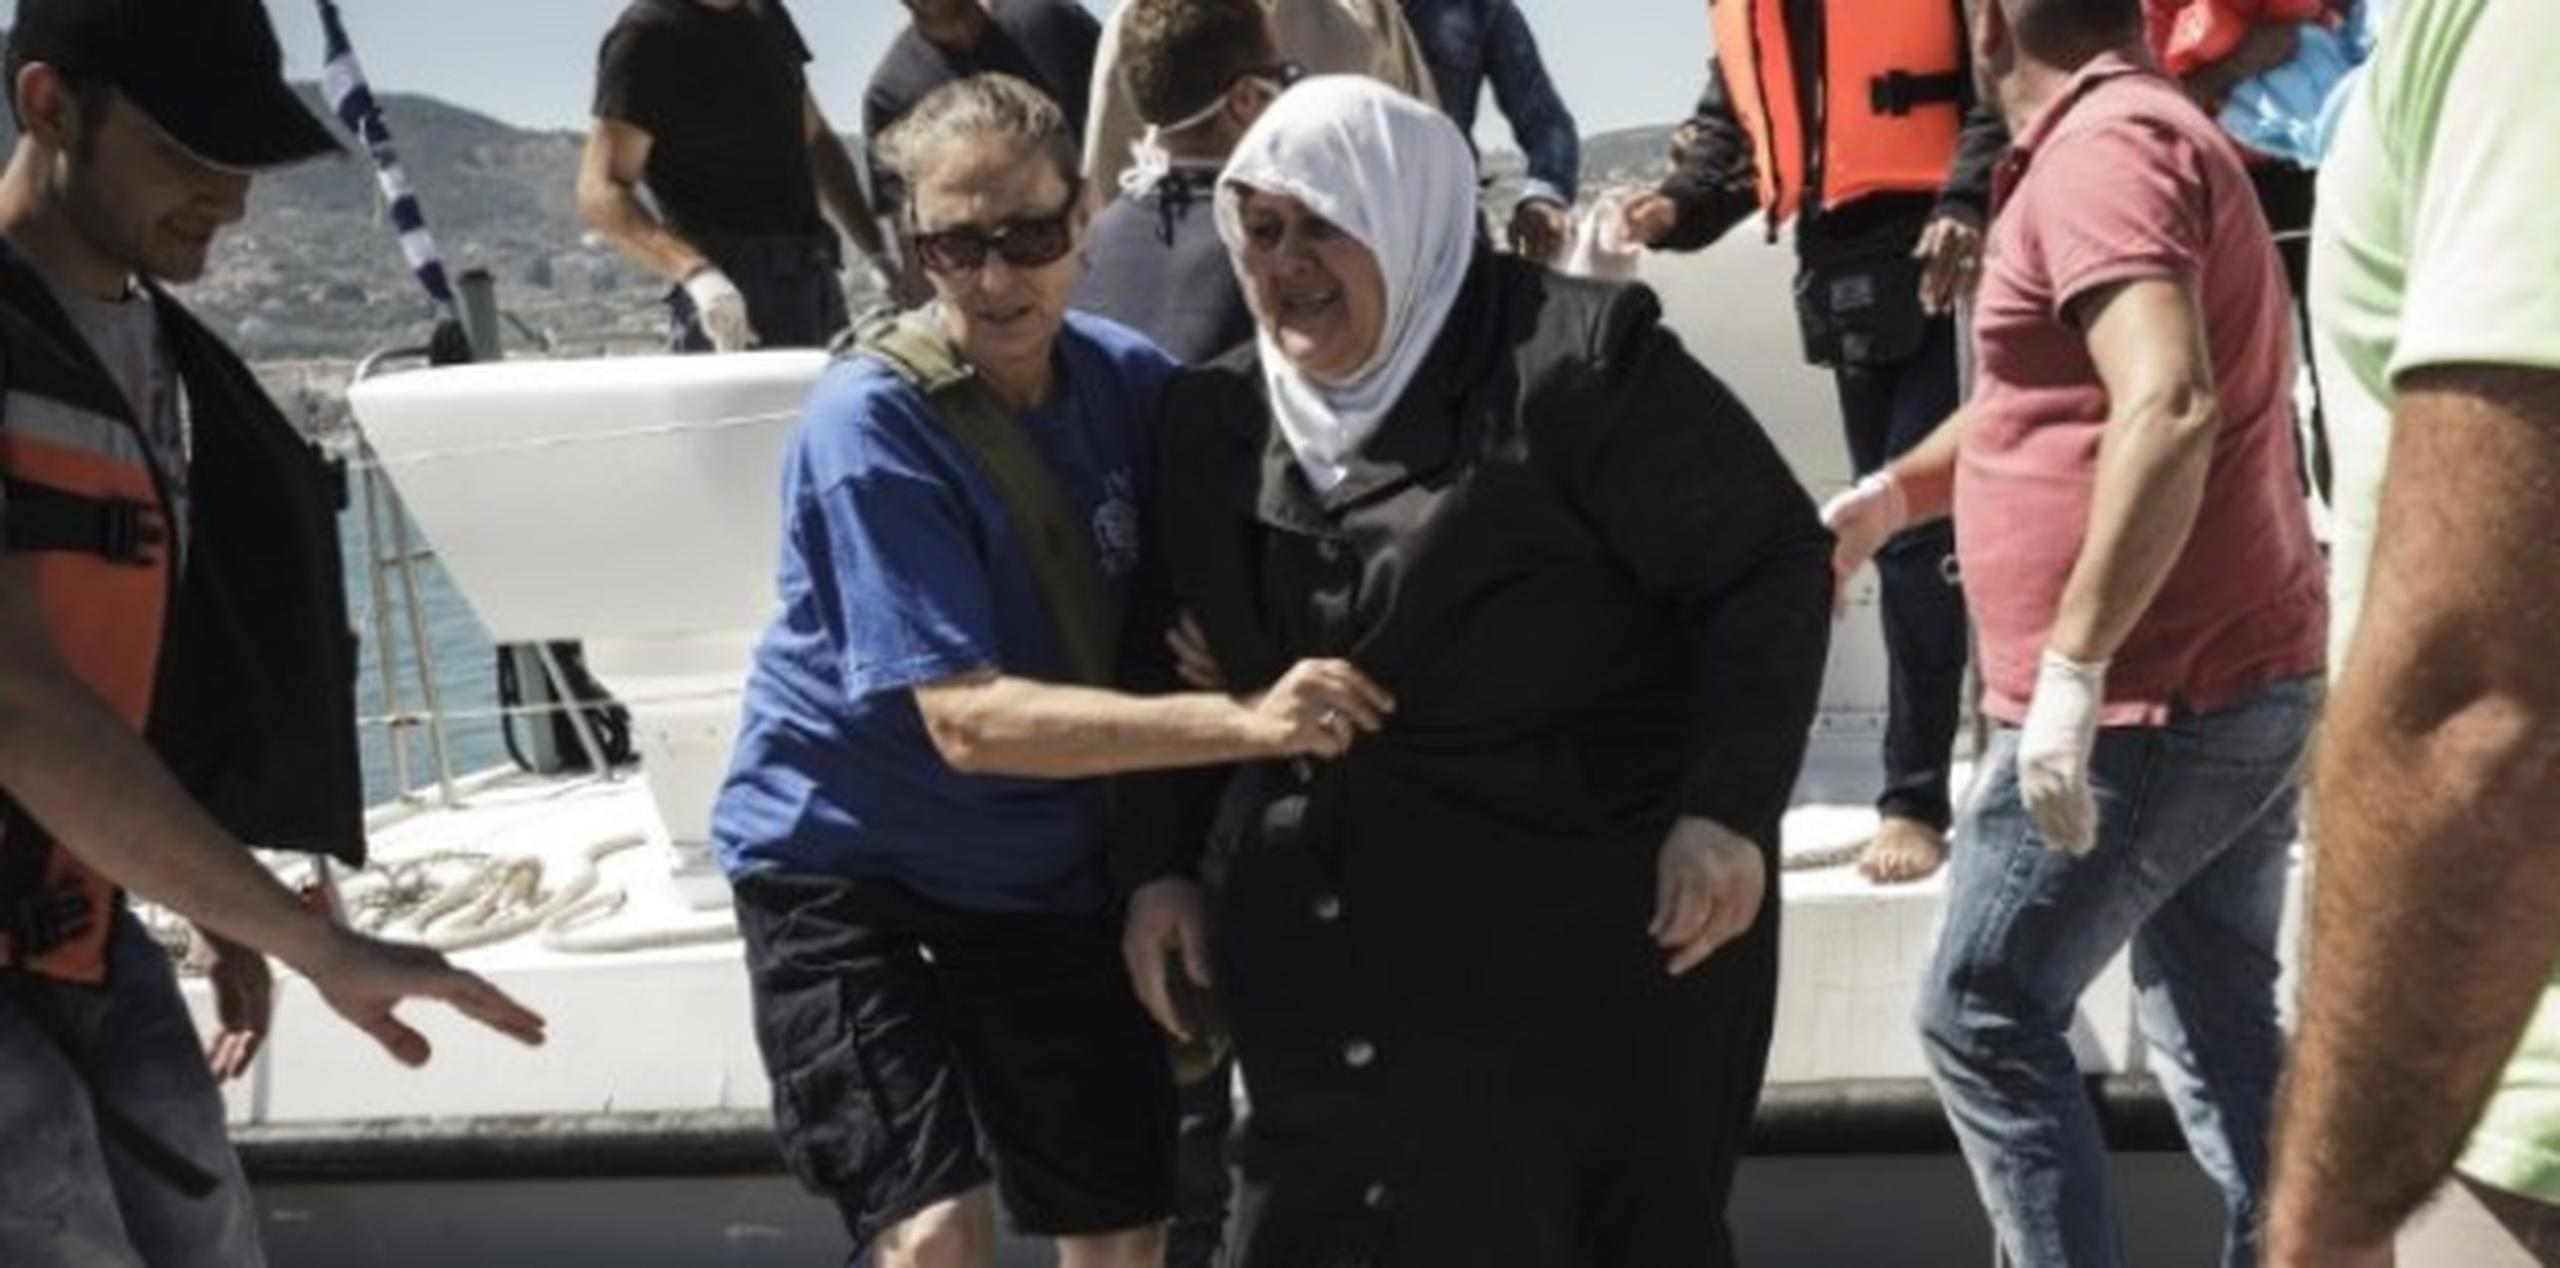 Una mujer es socorrida al desembarcar en la costa de Grecia, en uno de numerosos viajes de inmigrantes que se han estado reportando en las costas del Mar Mediterráneo. (AFP)